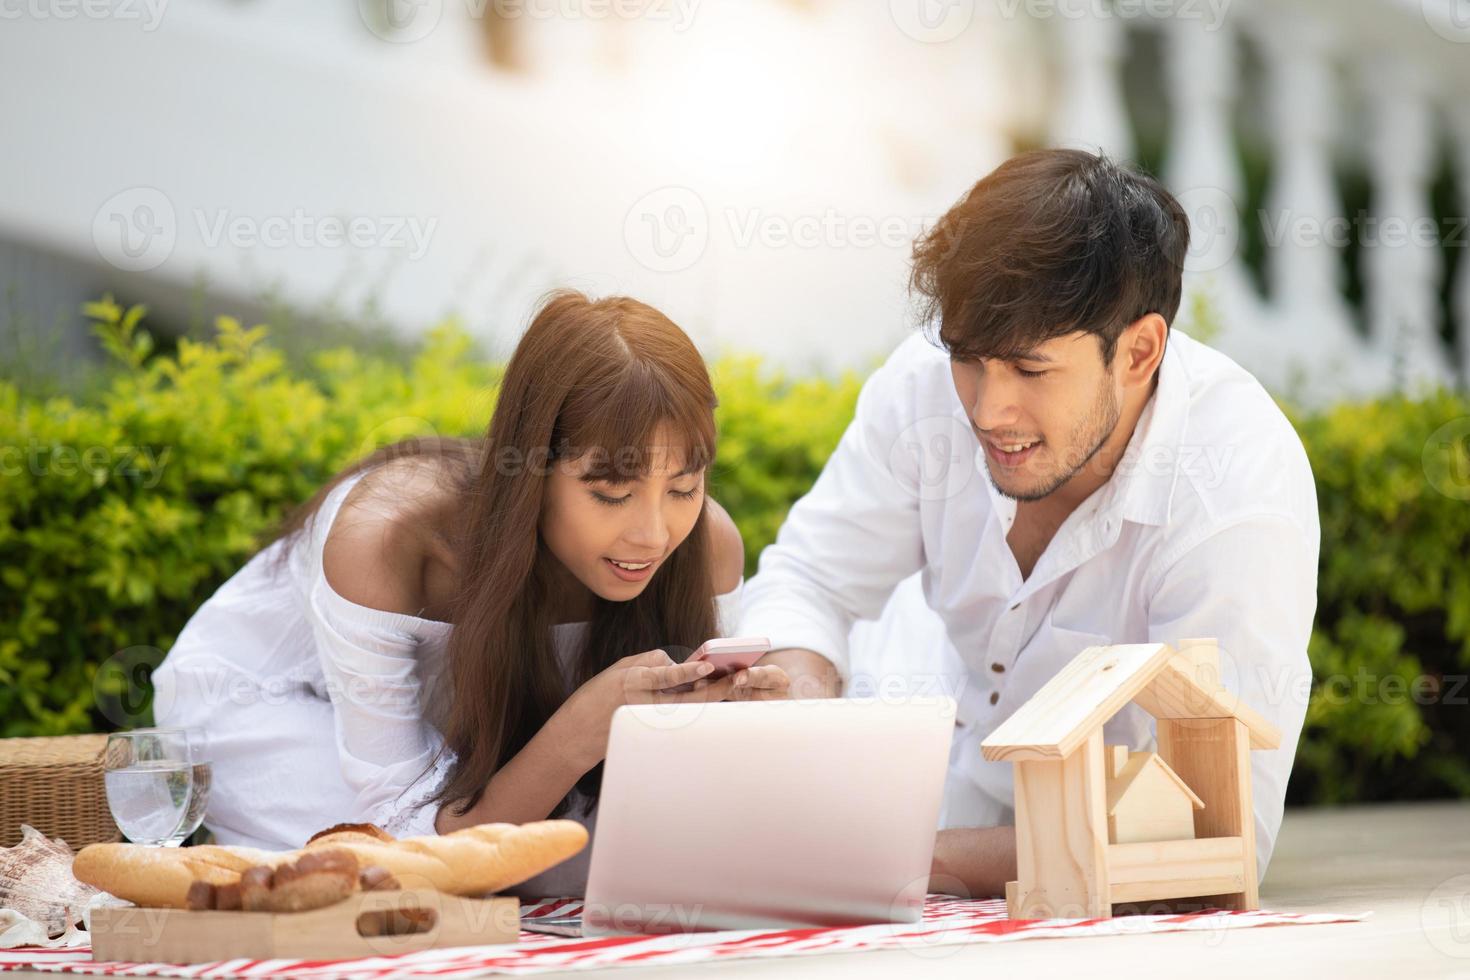 glückliche romantische Paare, die sich zu Hause unterhalten und Wein trinken, während sie ein Picknick machen foto